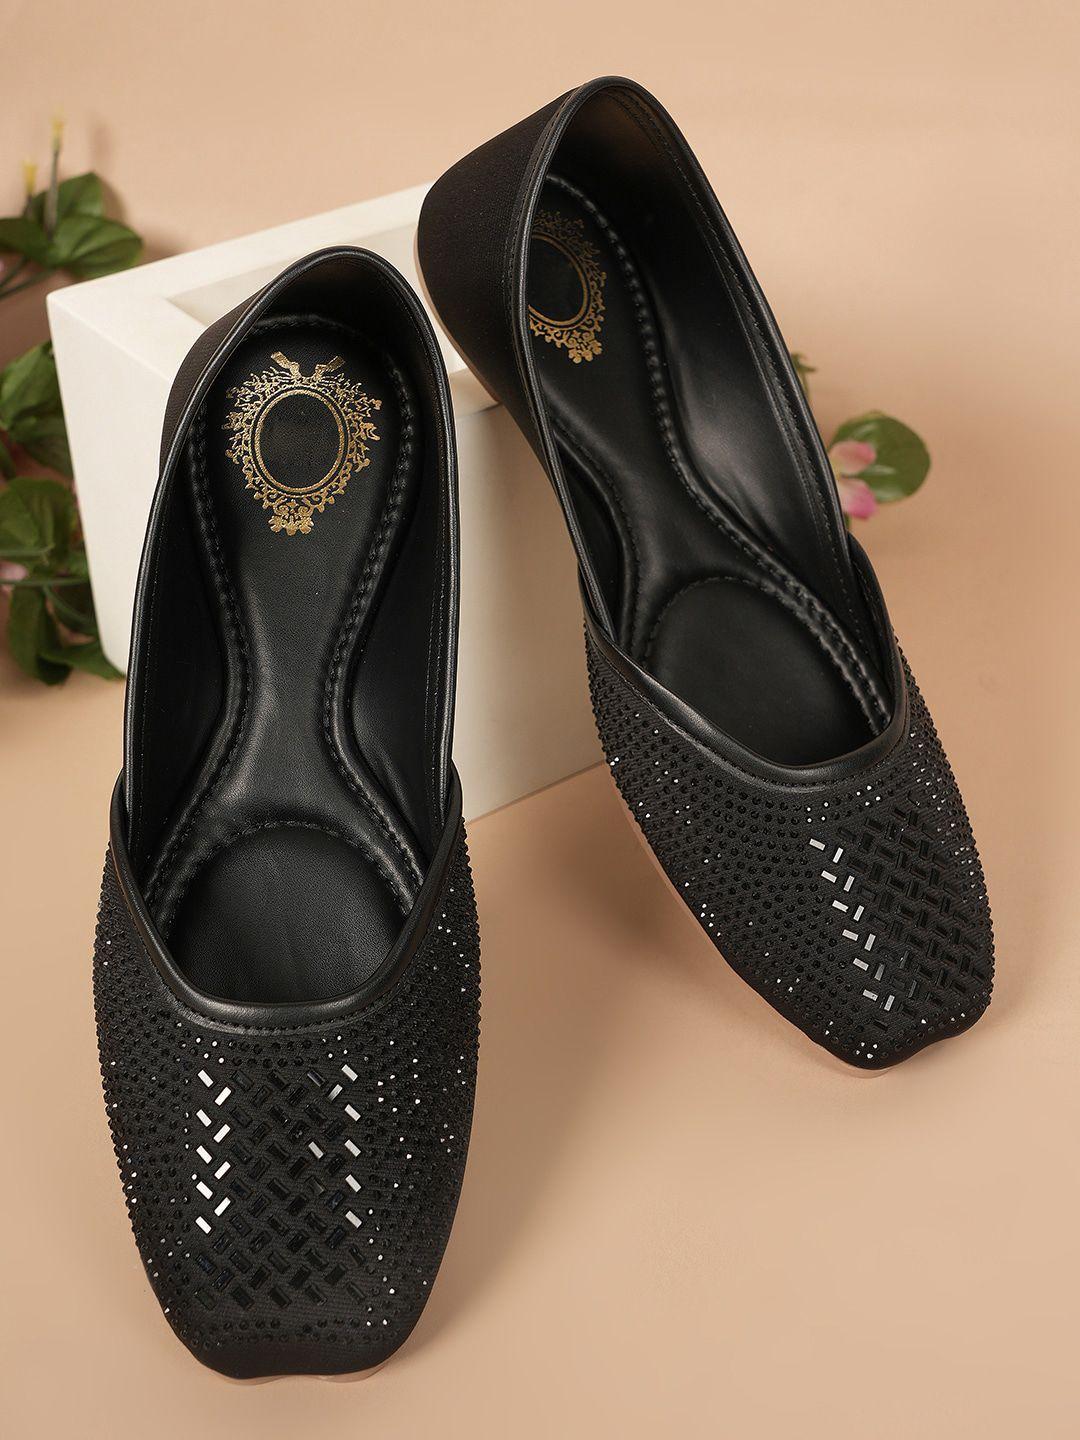 style shoes ethnic embellished square toe mojaris